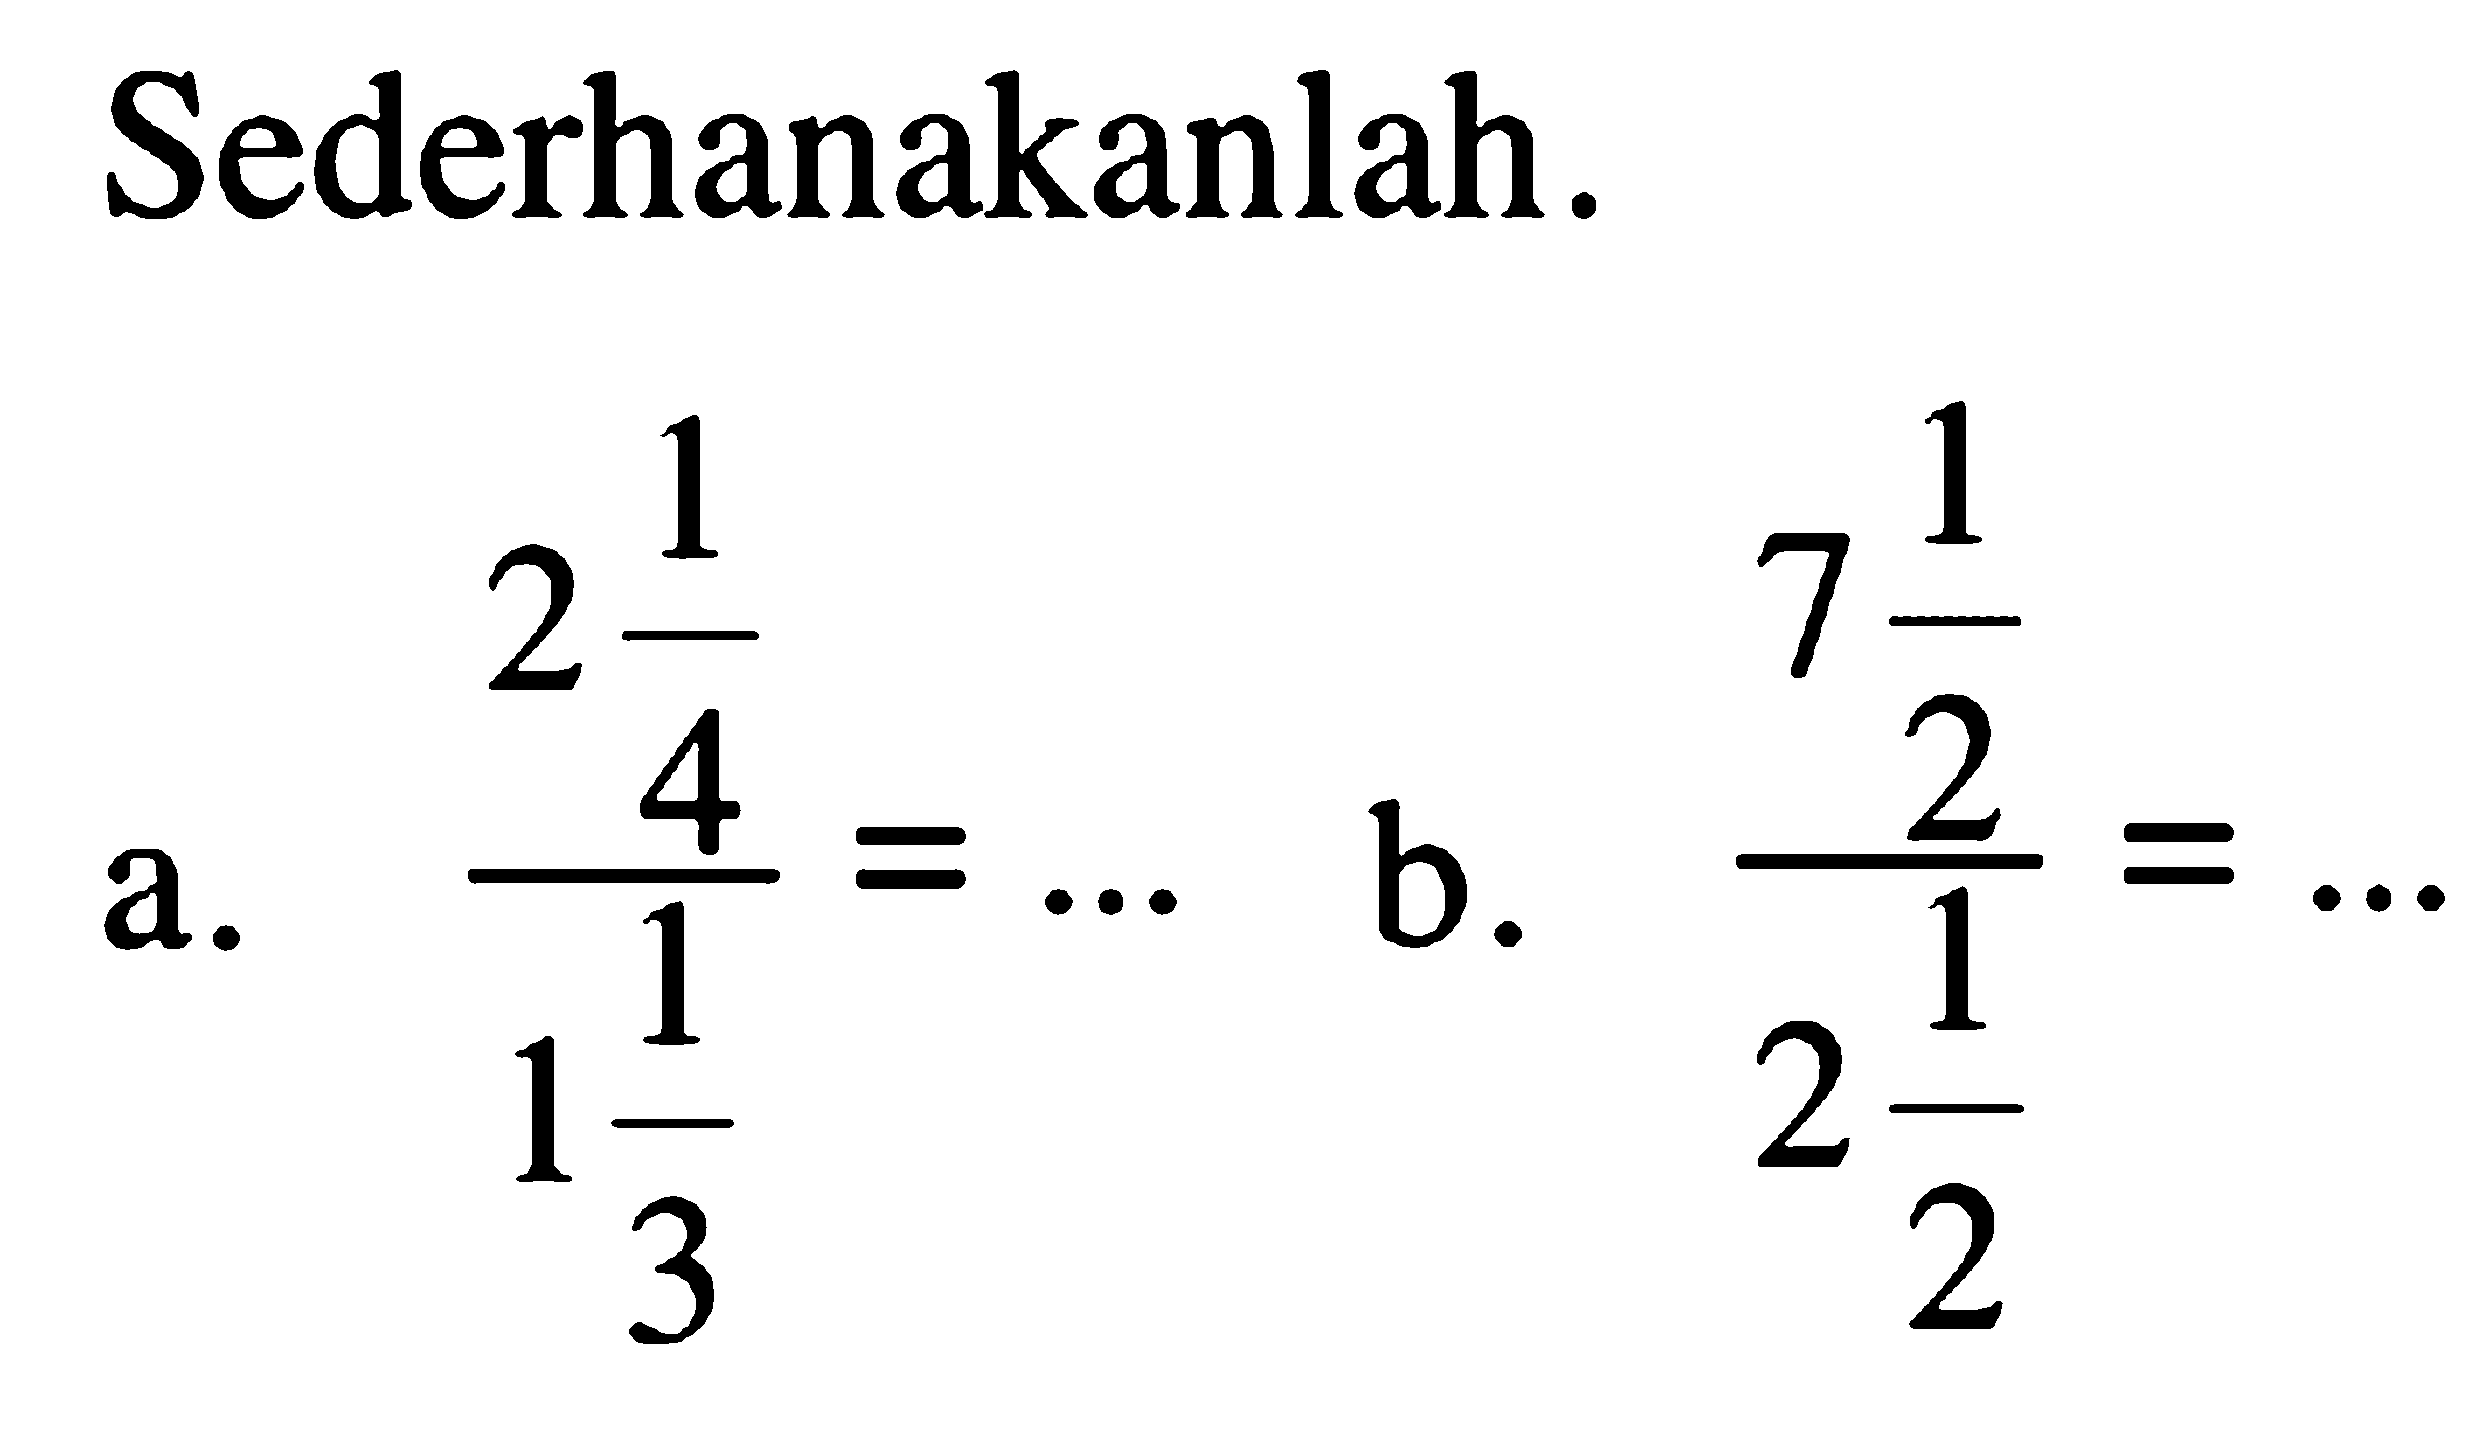 Sederhanakanlah! a. (2 1/4)/(1 1/3) = ... b. (7 1/2)/(2 1/2) = ...